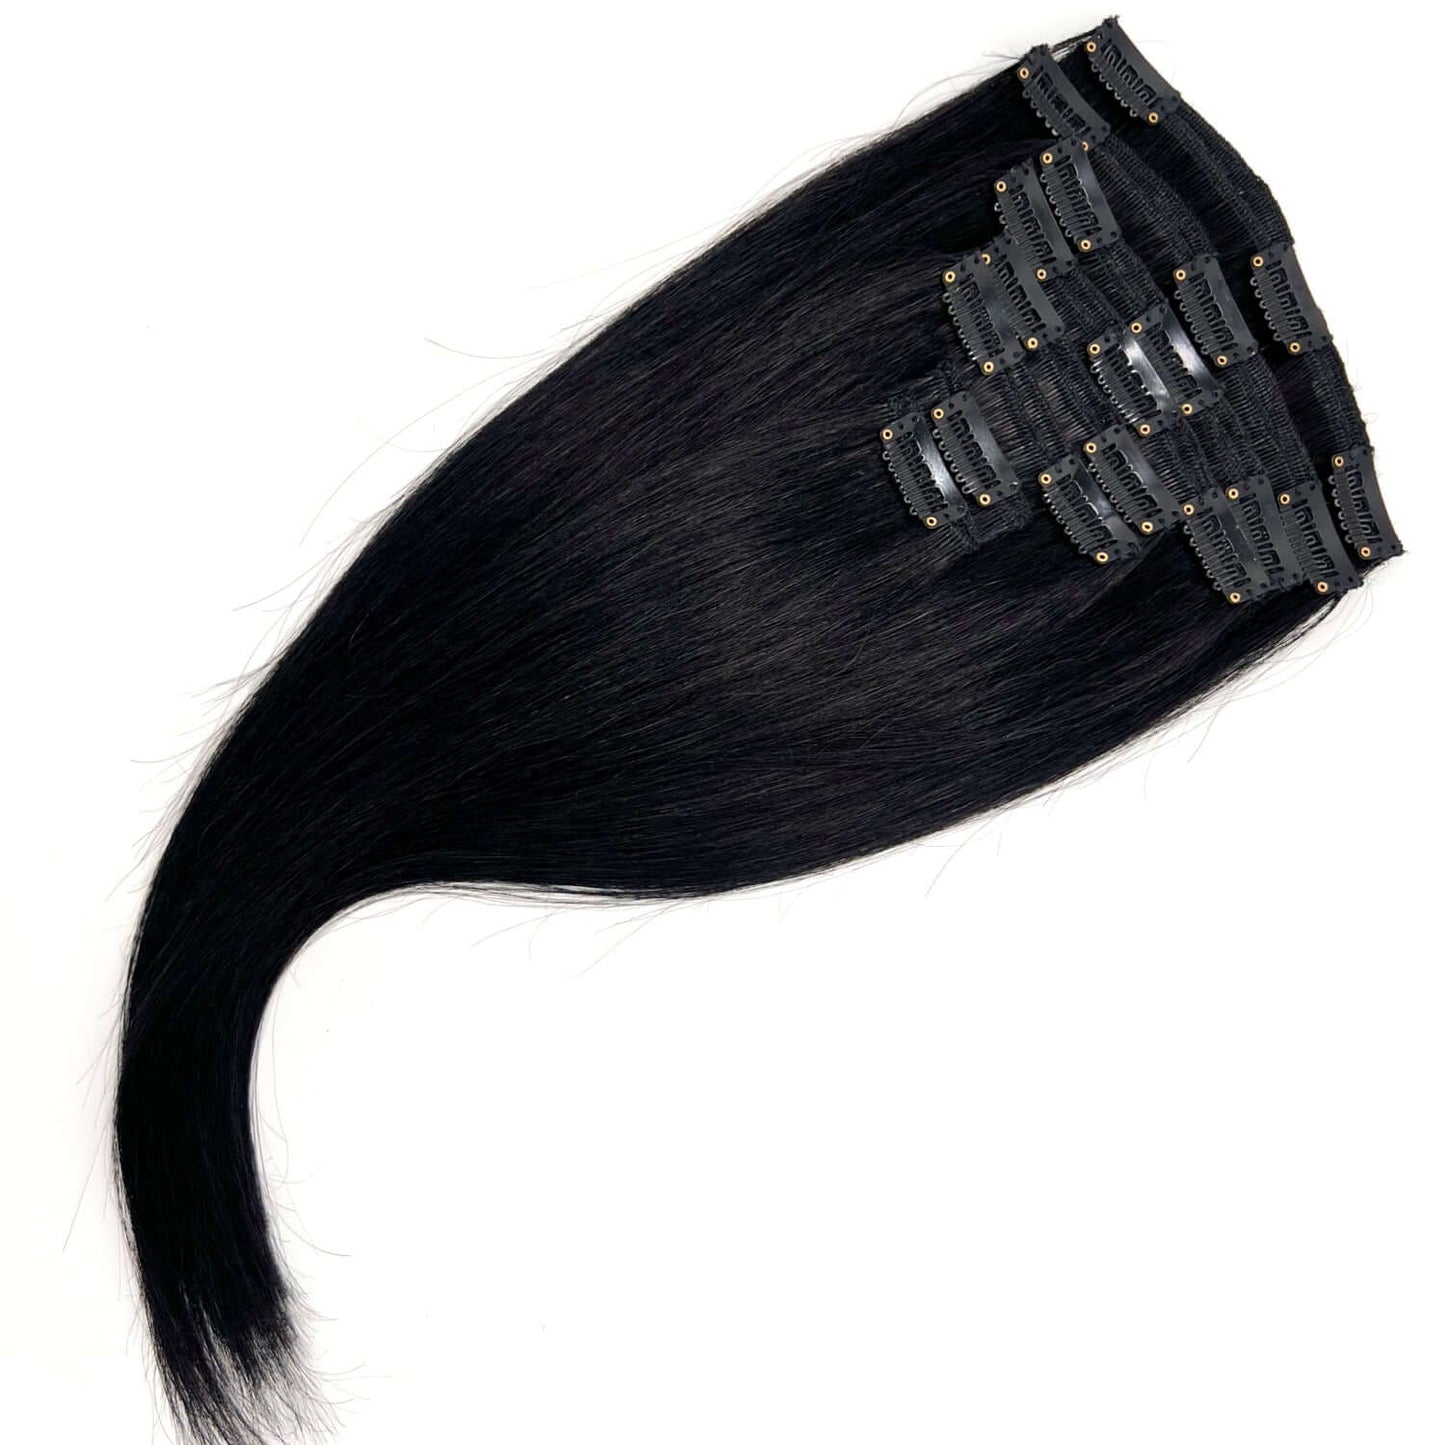 Clip on löshår hair extensions 8 delar äkta löshår- Svart #1- Hair by Grace Store